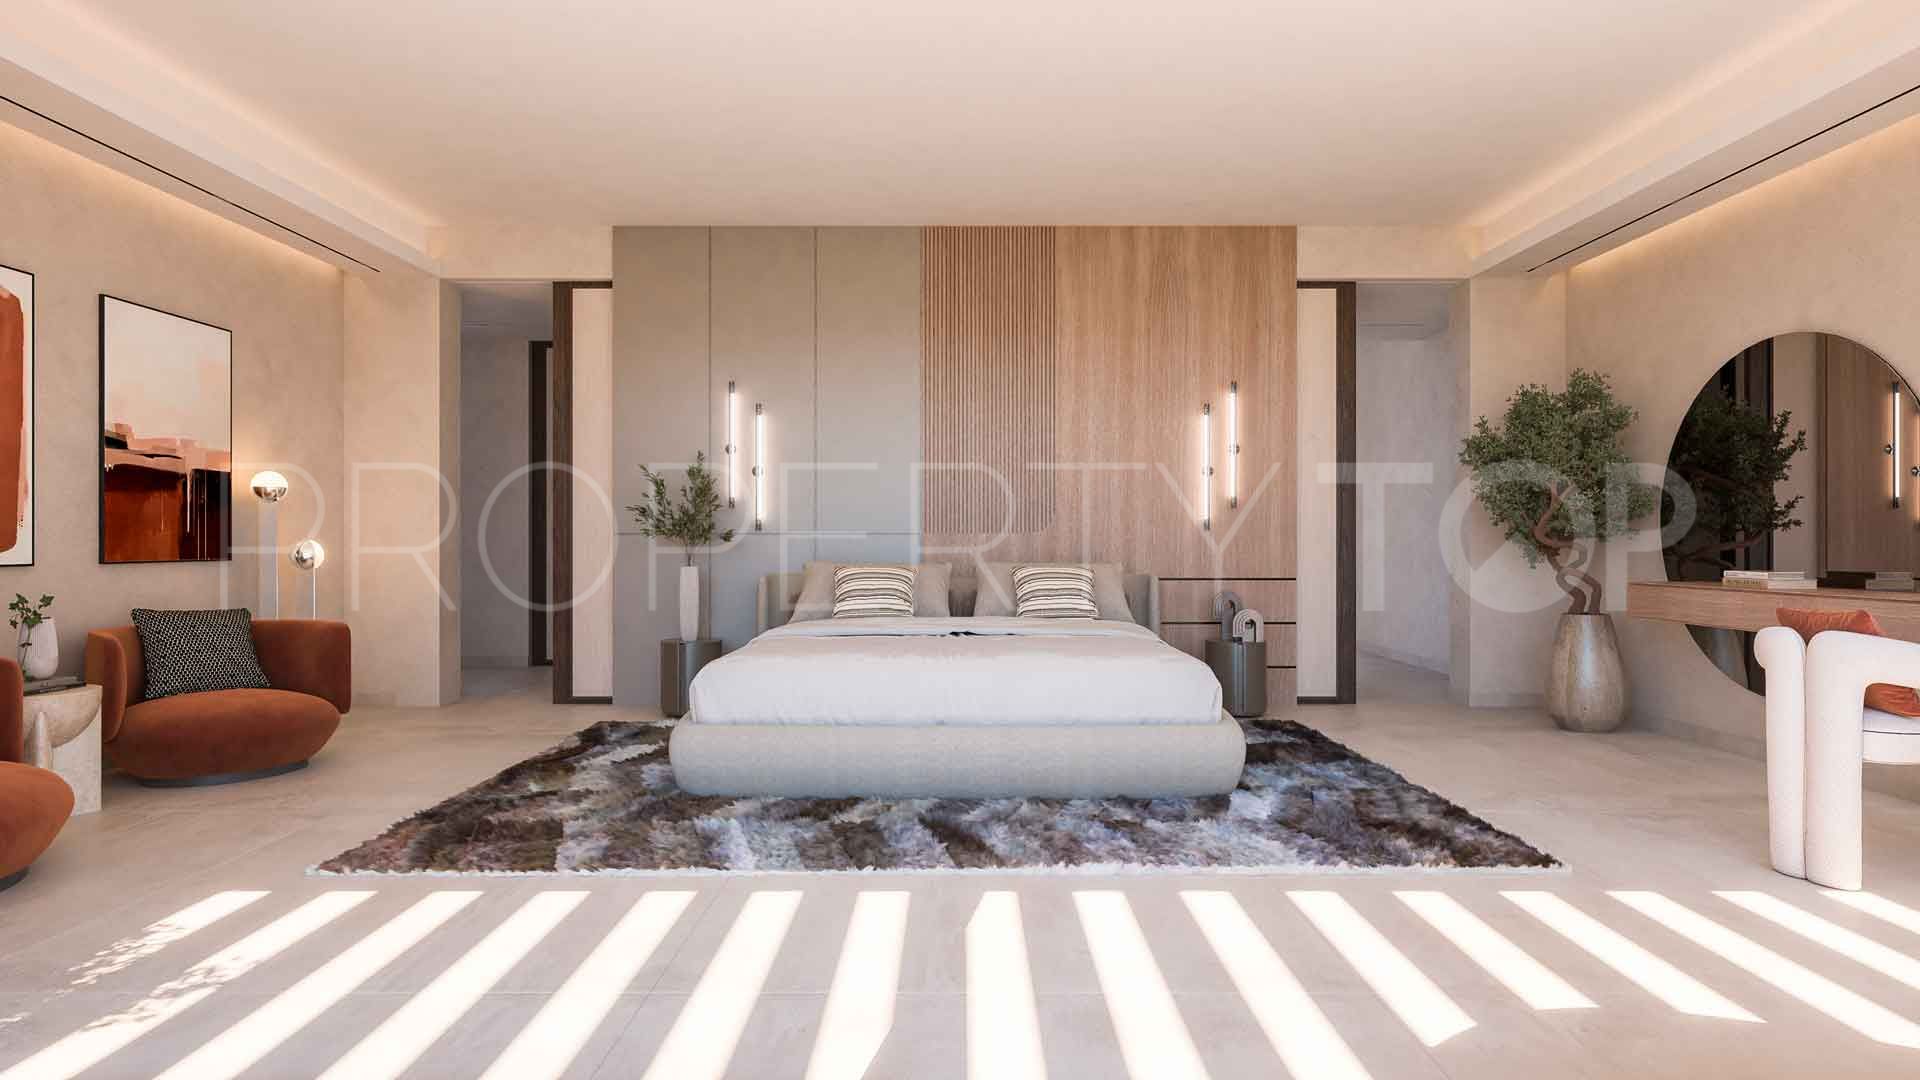 7 bedrooms villa in Mirador del Paraiso for sale